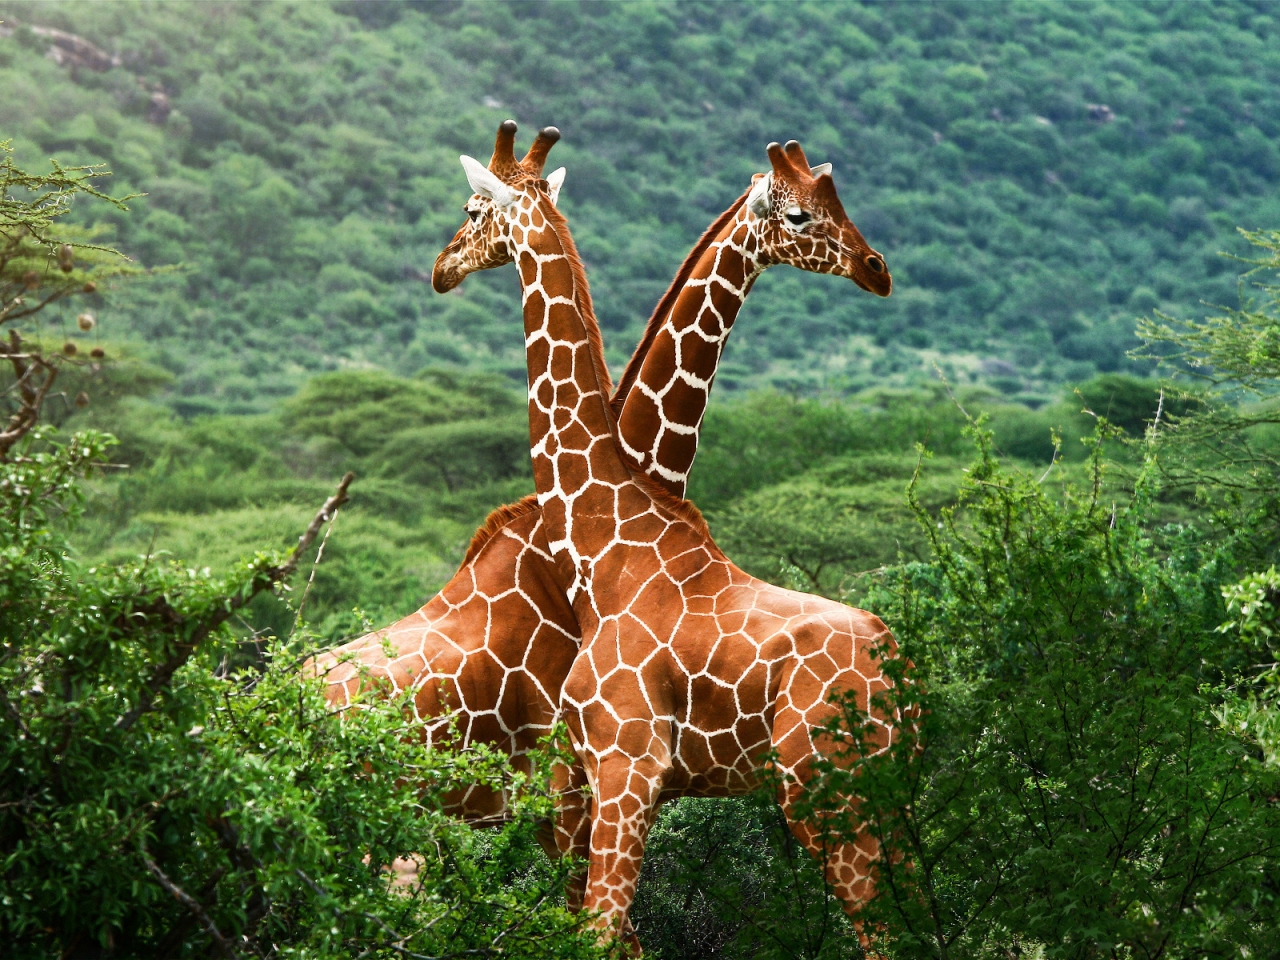 Giraffe Friends for 1280 x 960 resolution